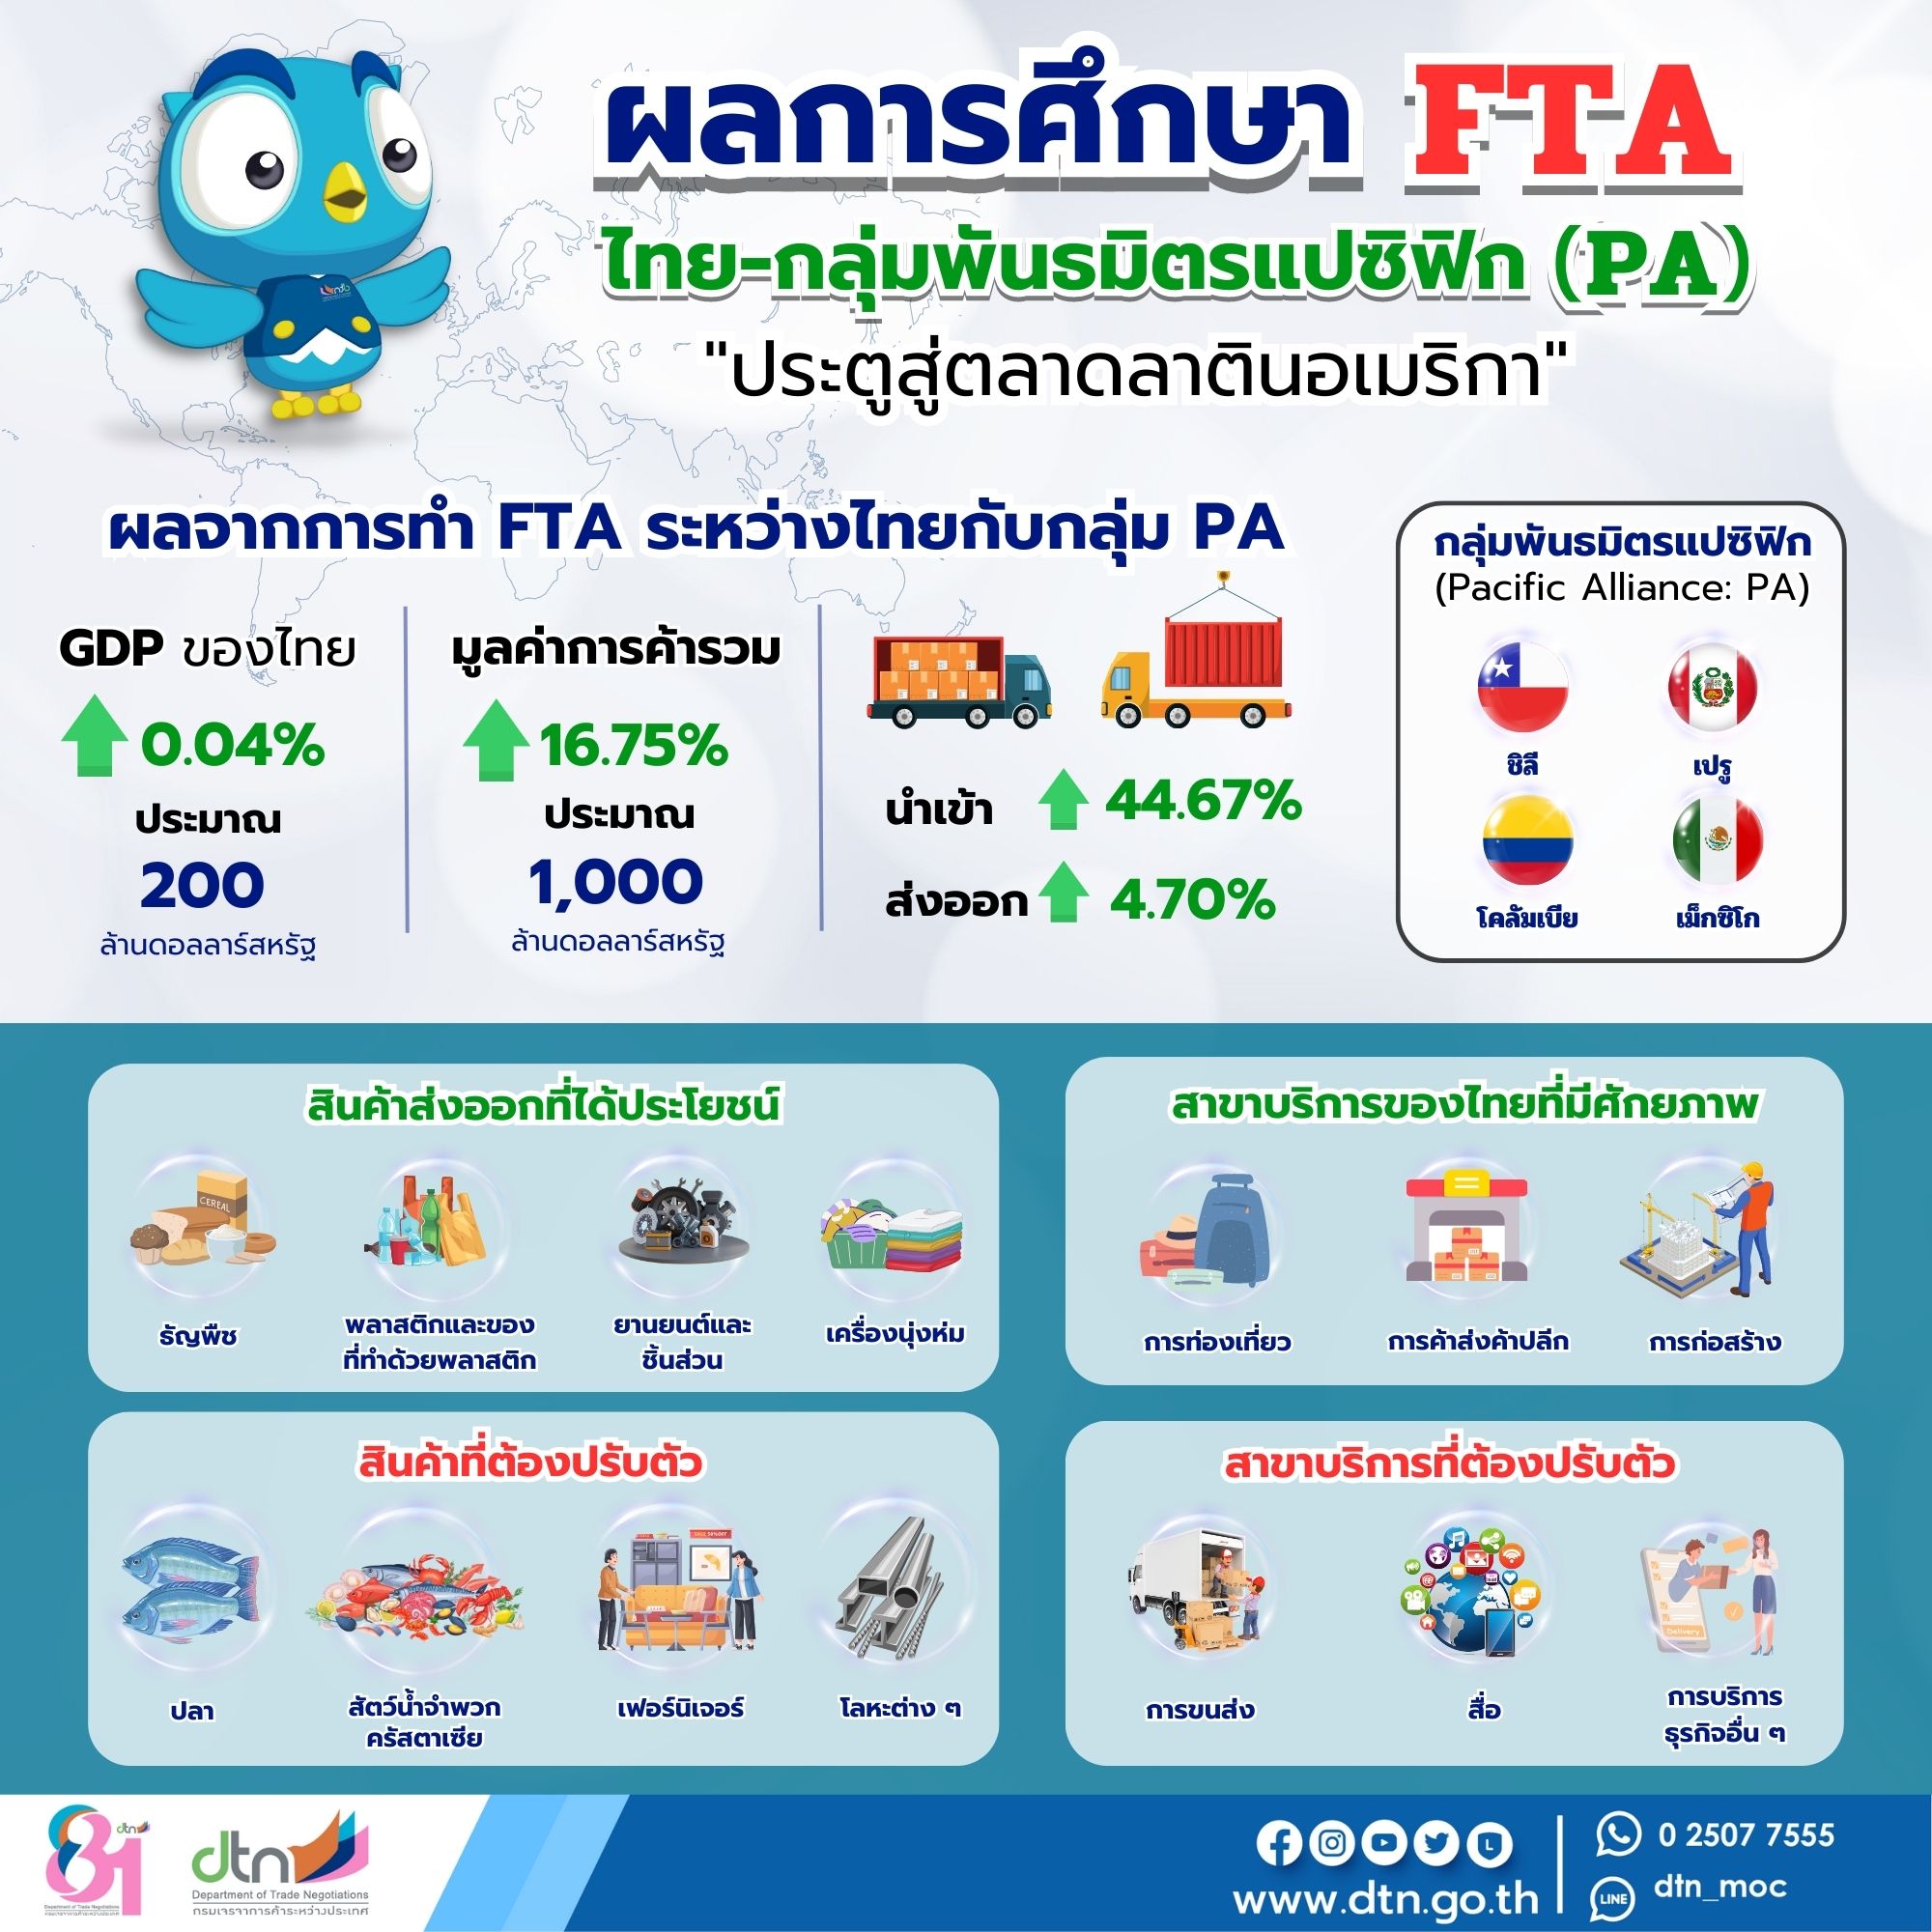 info ข้อมูลผลการศึกษา FTA ระหว่างไทย และ กลุ่มพันธมิตรแปซิฟิก (PA)